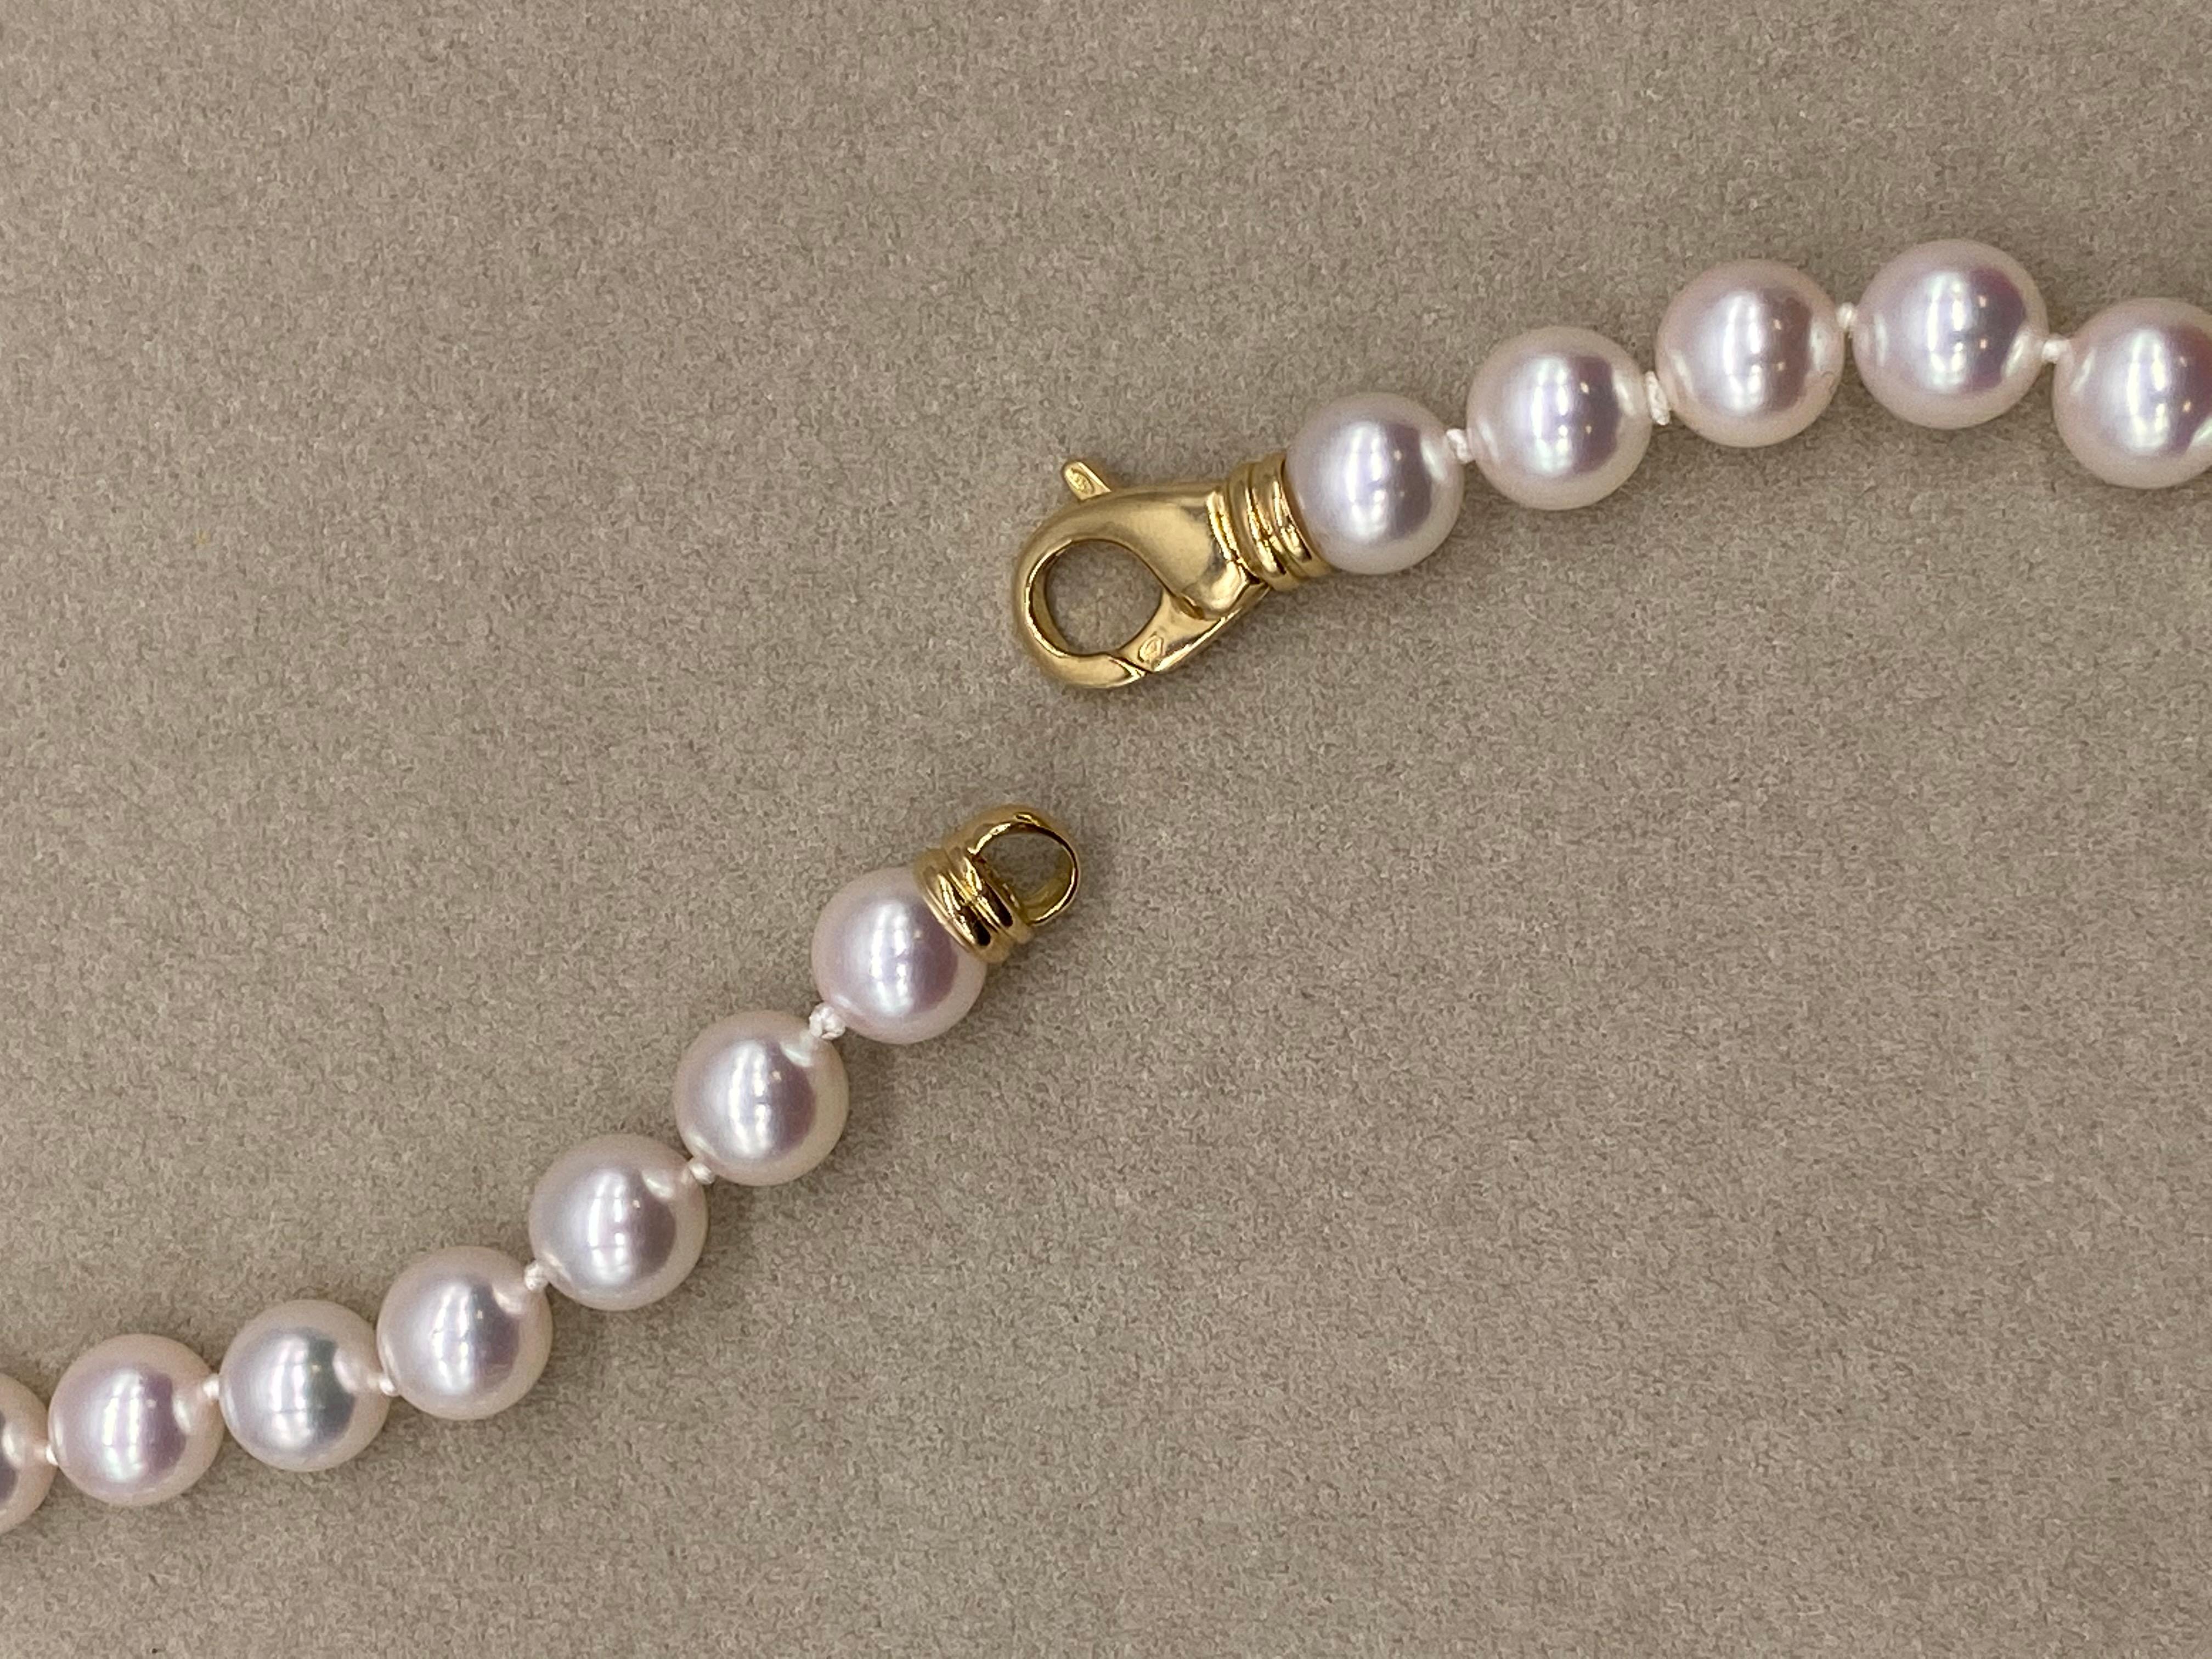 Découvrez ce magnifique collier de perles d'Akoya, véritable symbole de grâce et de sophistication. Les perles d'Akoya, réputées pour leur brillance naturelle et leur finition impeccable, sont appréciées depuis des siècles pour leur beauté